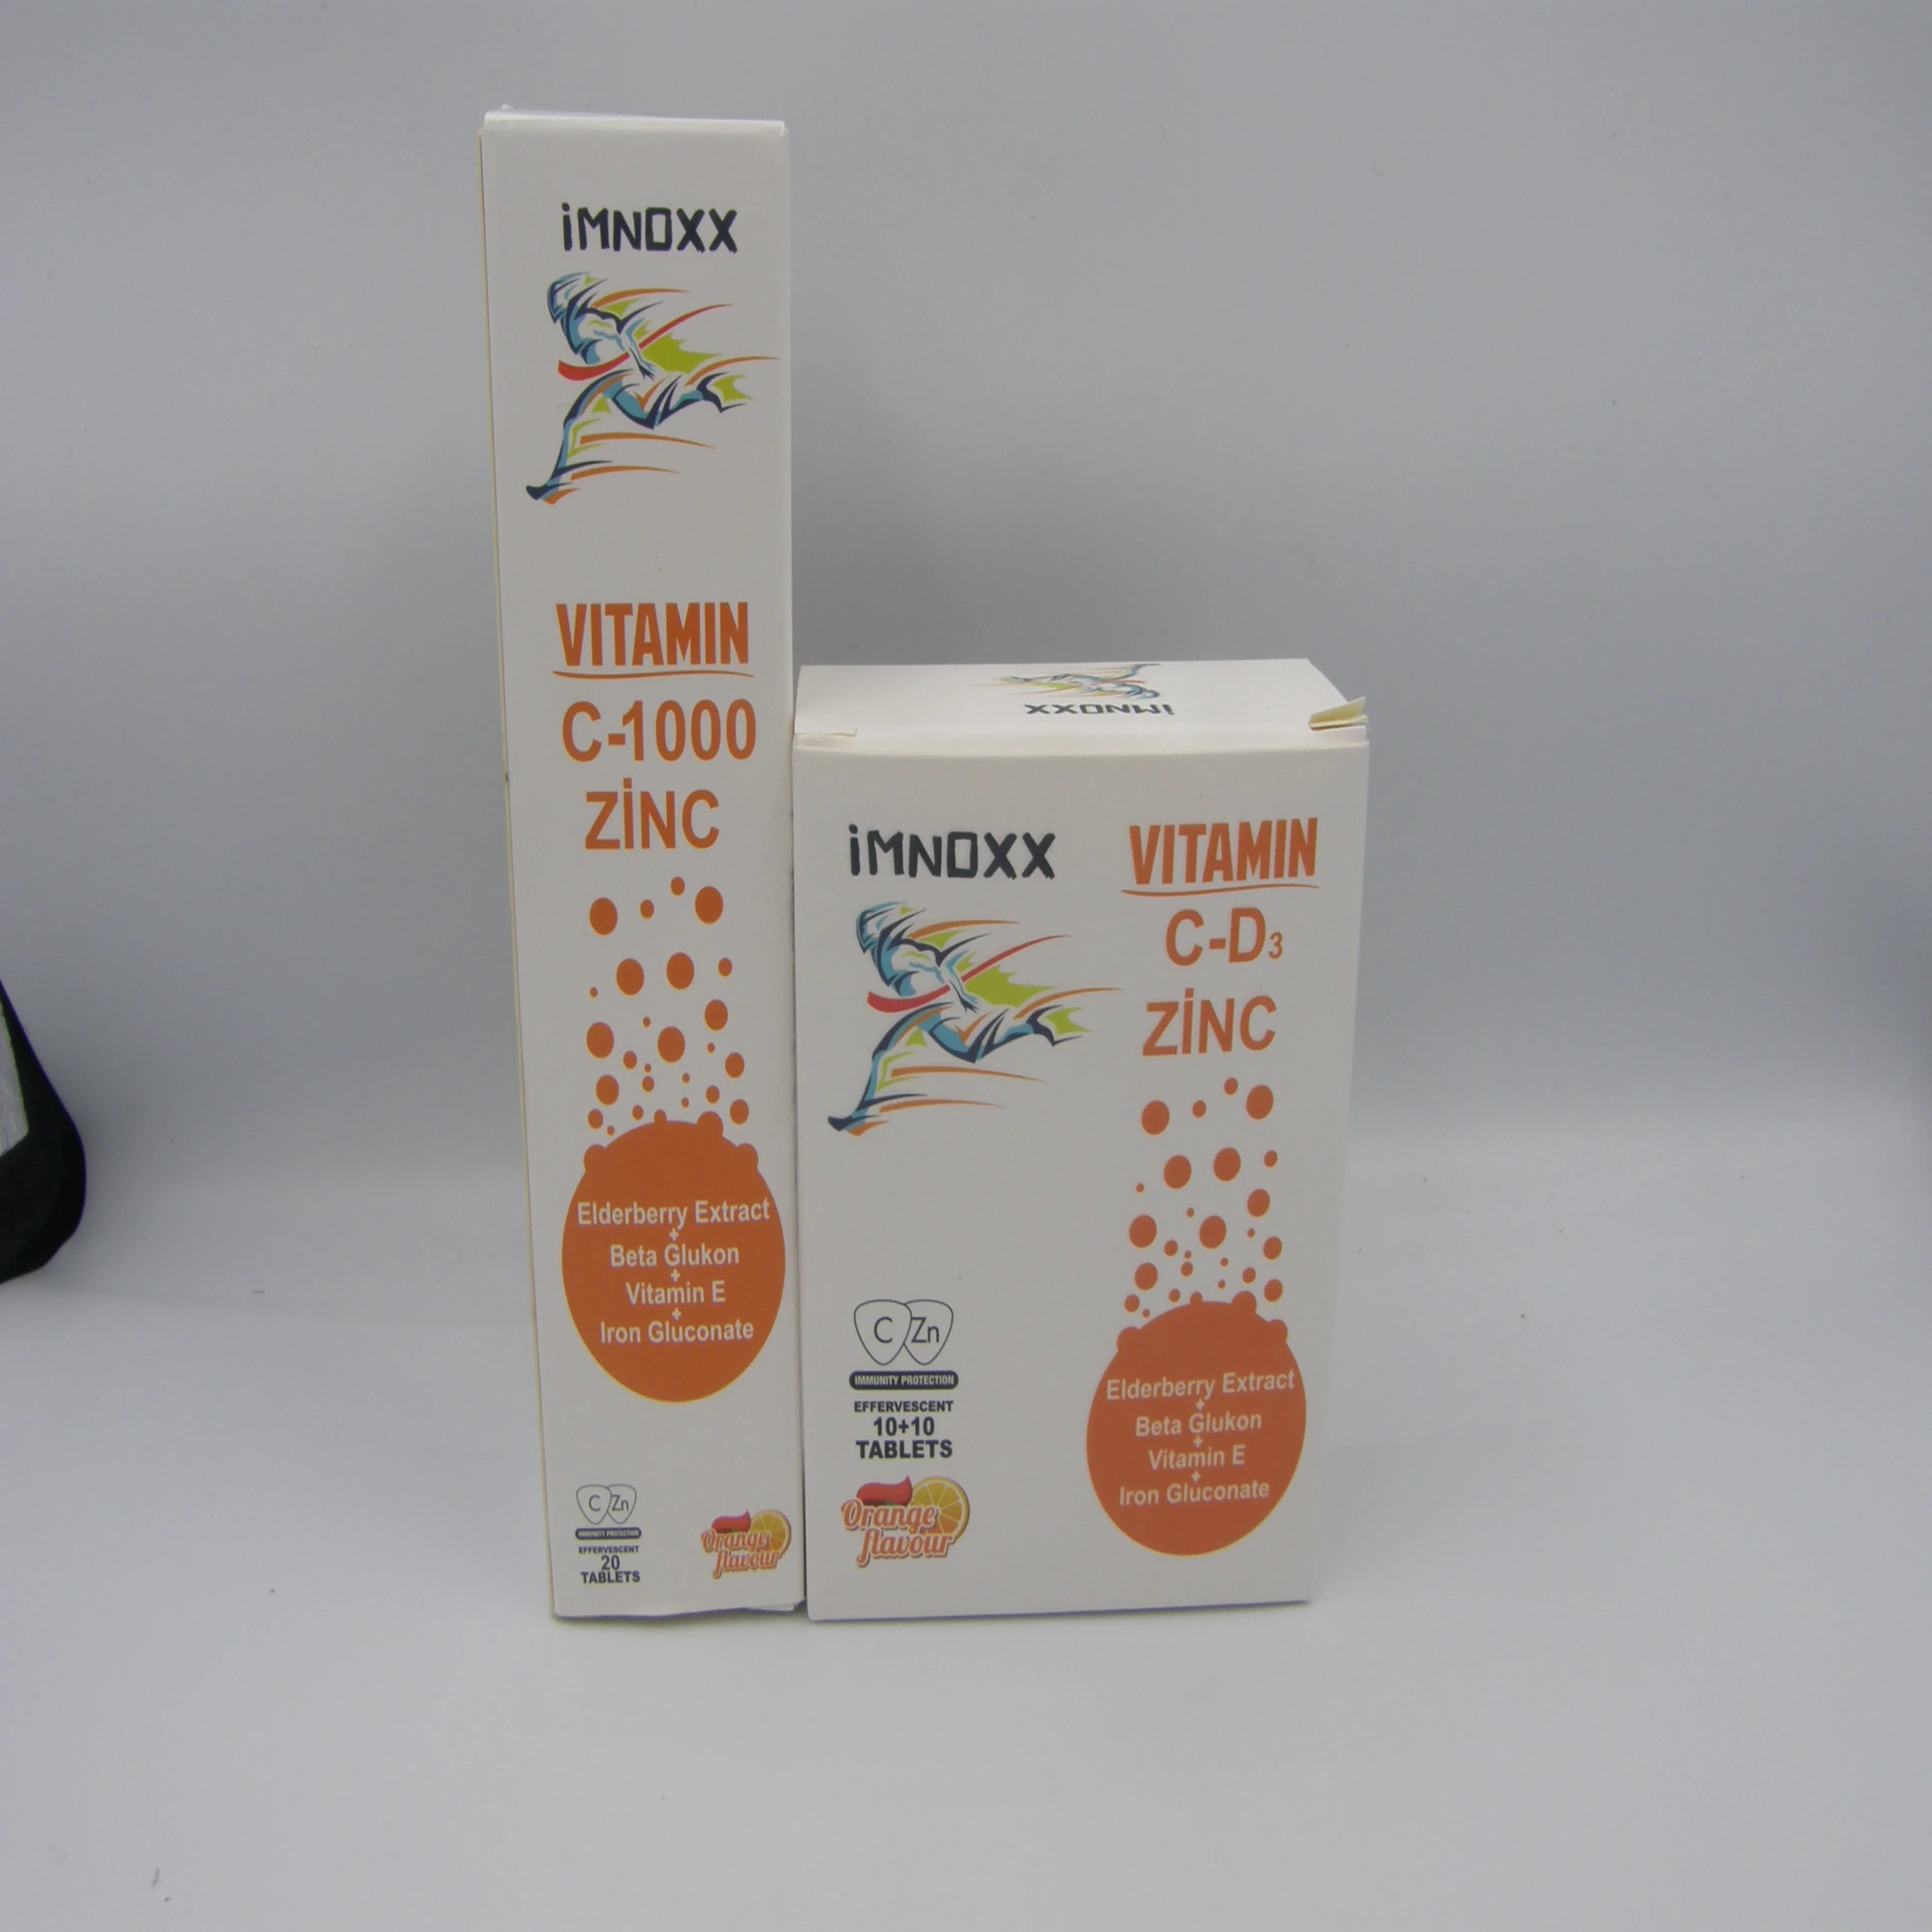 Imnoxx Mg Vitamine C + Zink Bruistabletten 20 Tabletten - Buy C,Vitamine C Bruisende Tablet 1000mg,Water Oplosbare Tabletten Product Alibaba.com